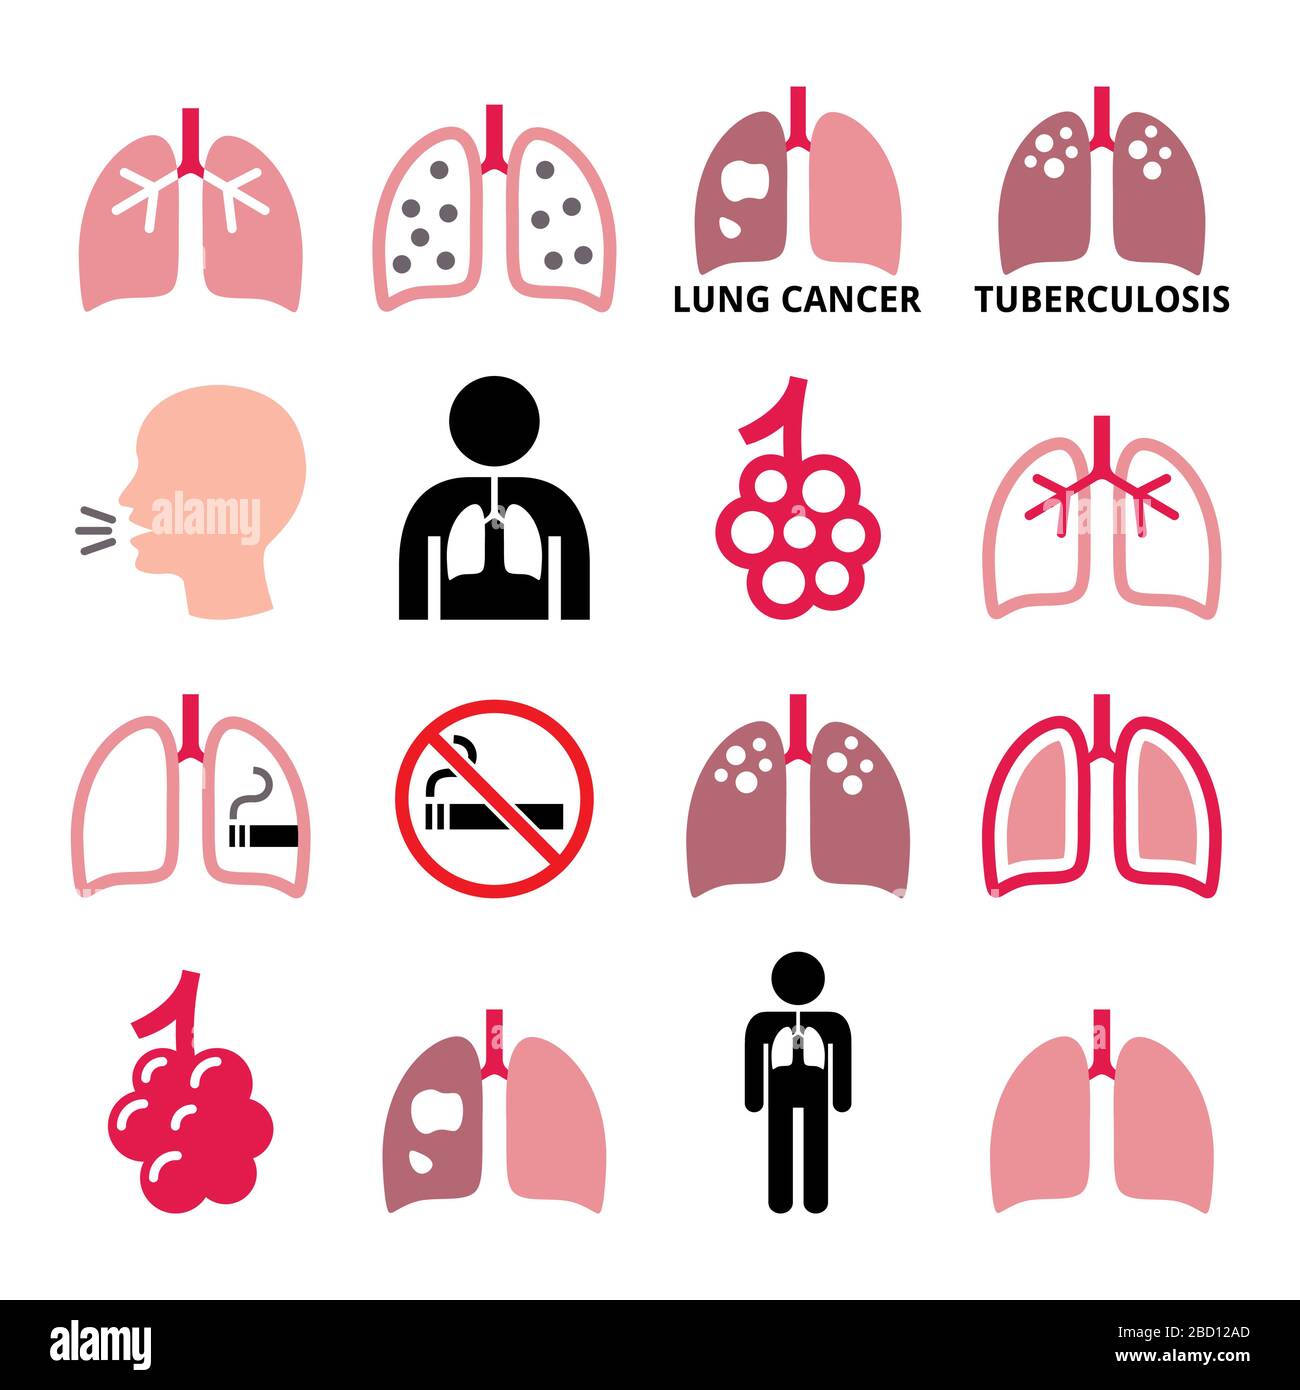 Les poumons, les icônes de vecteur de maladie pulmonaire définies - tuberculose, cancer, poumons du fumeur - concept de santé Illustration de Vecteur